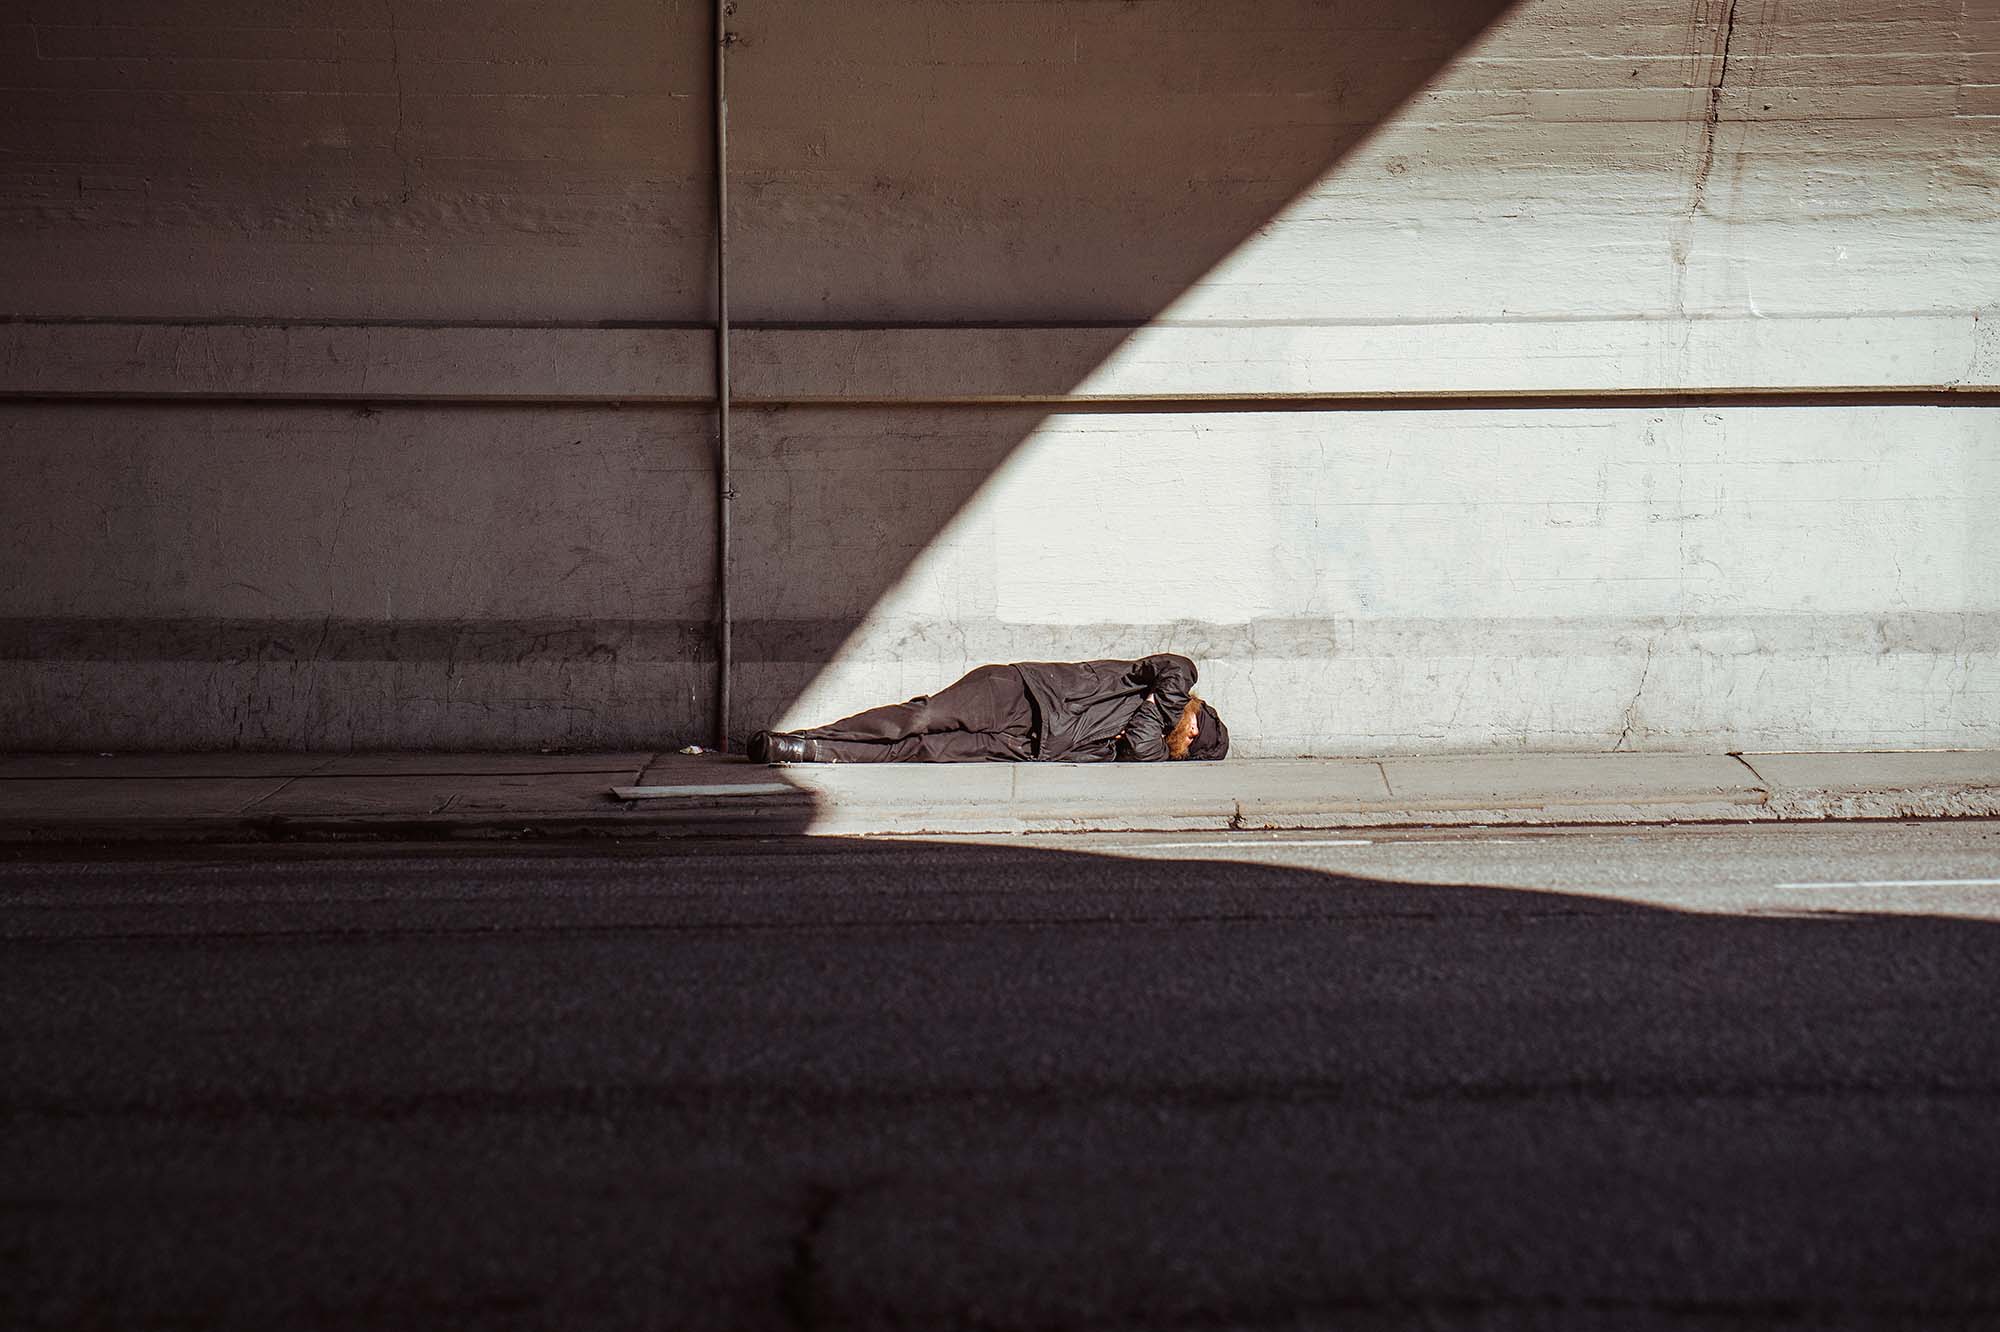 bg_homeless man sleeping underpass